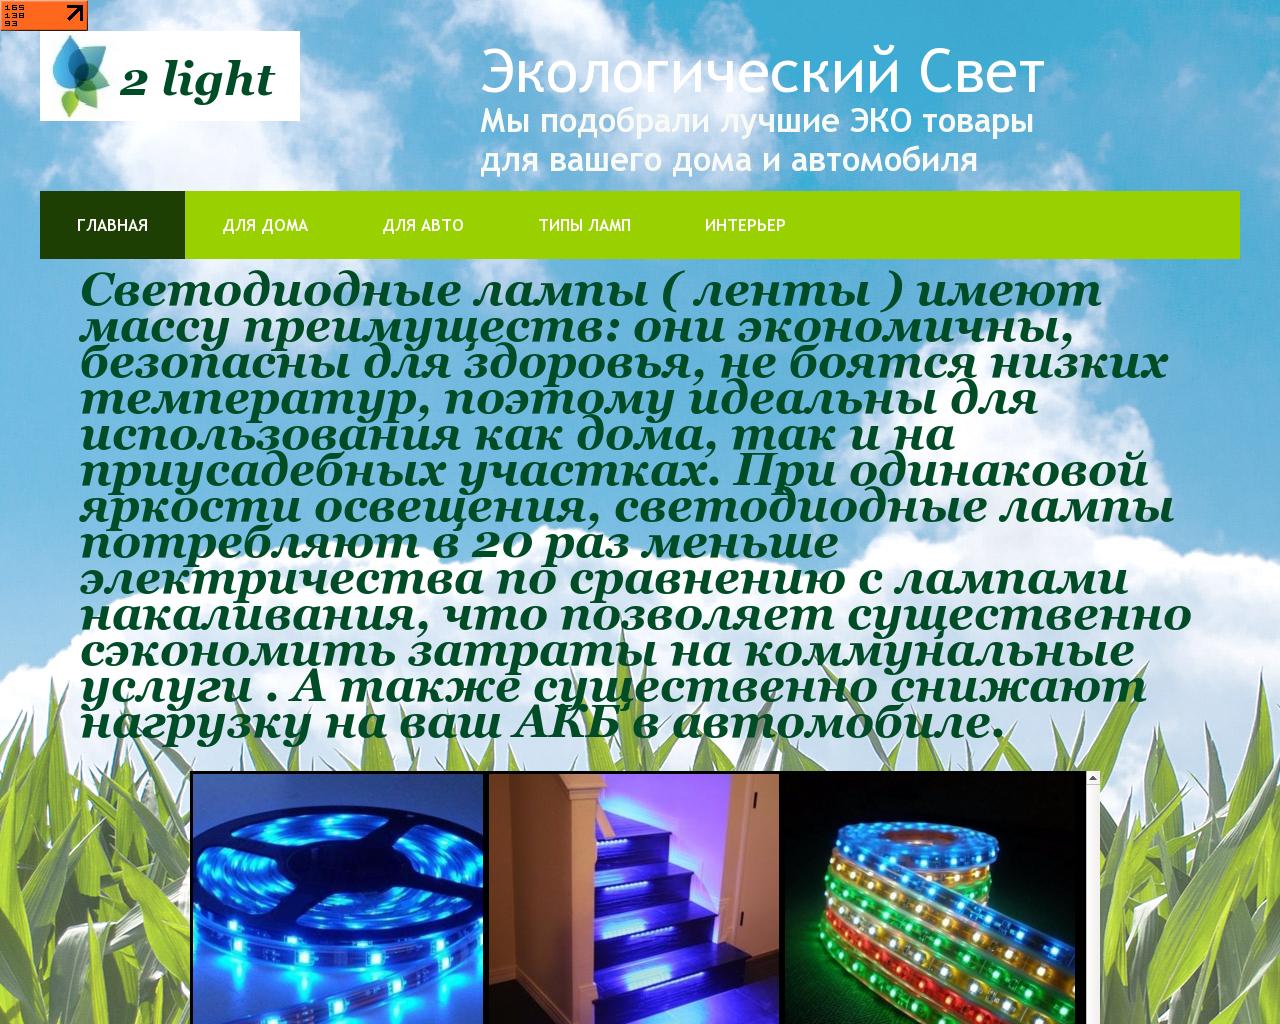 Изображение сайта 2light.ru в разрешении 1280x1024